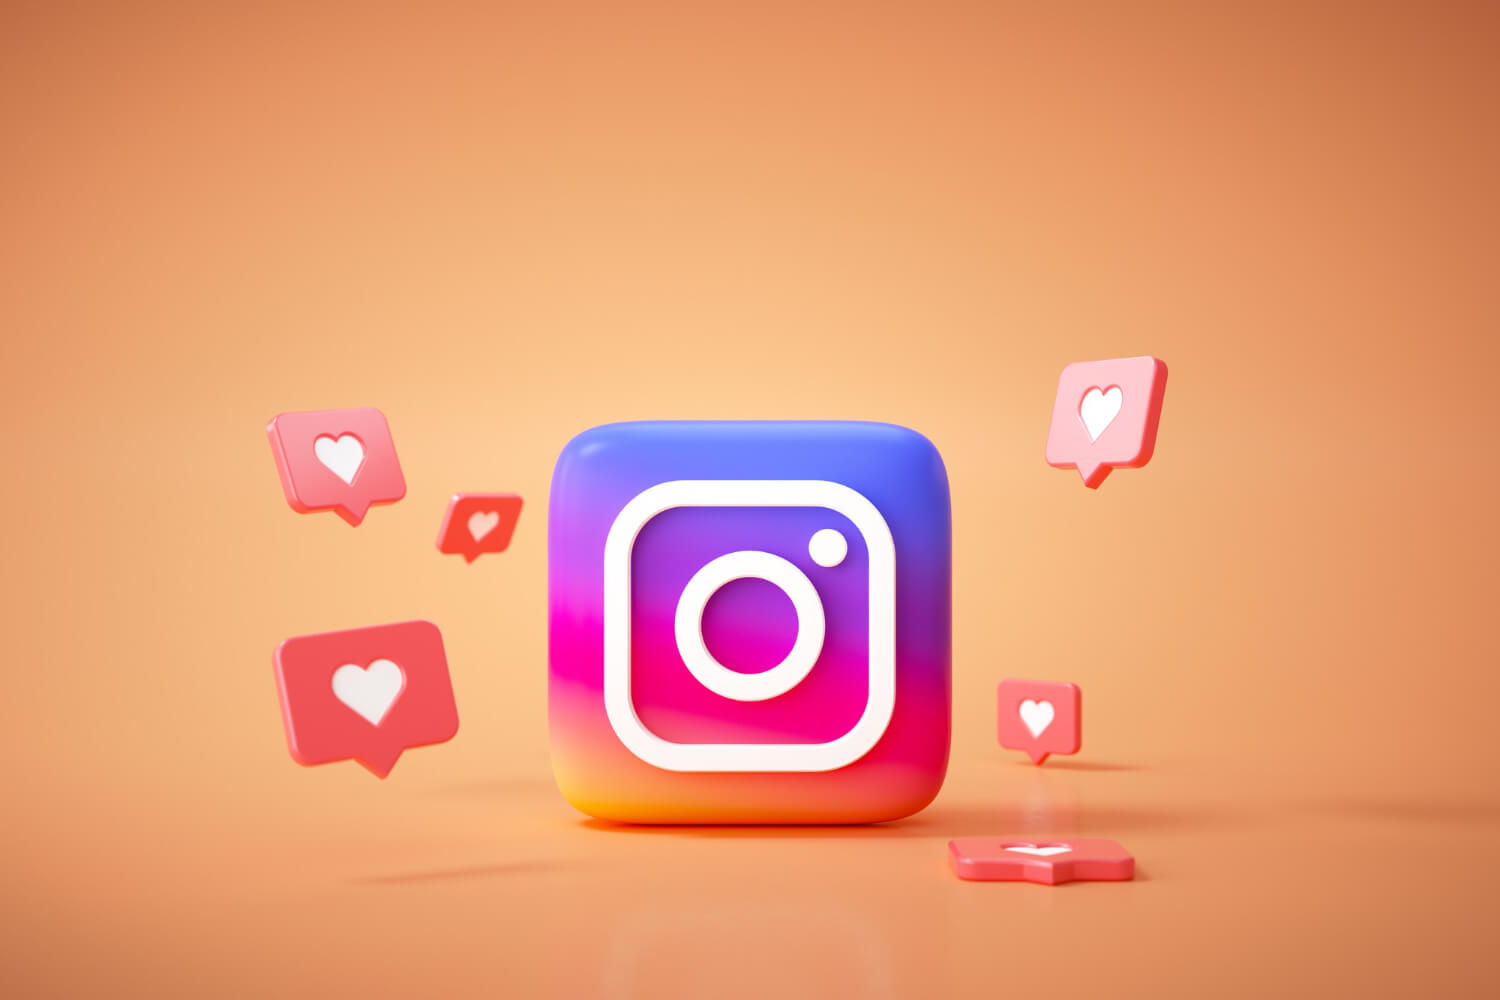 كيف يمكن إضافة مؤثرات خاصة إلى رسائلك على Instagram؟